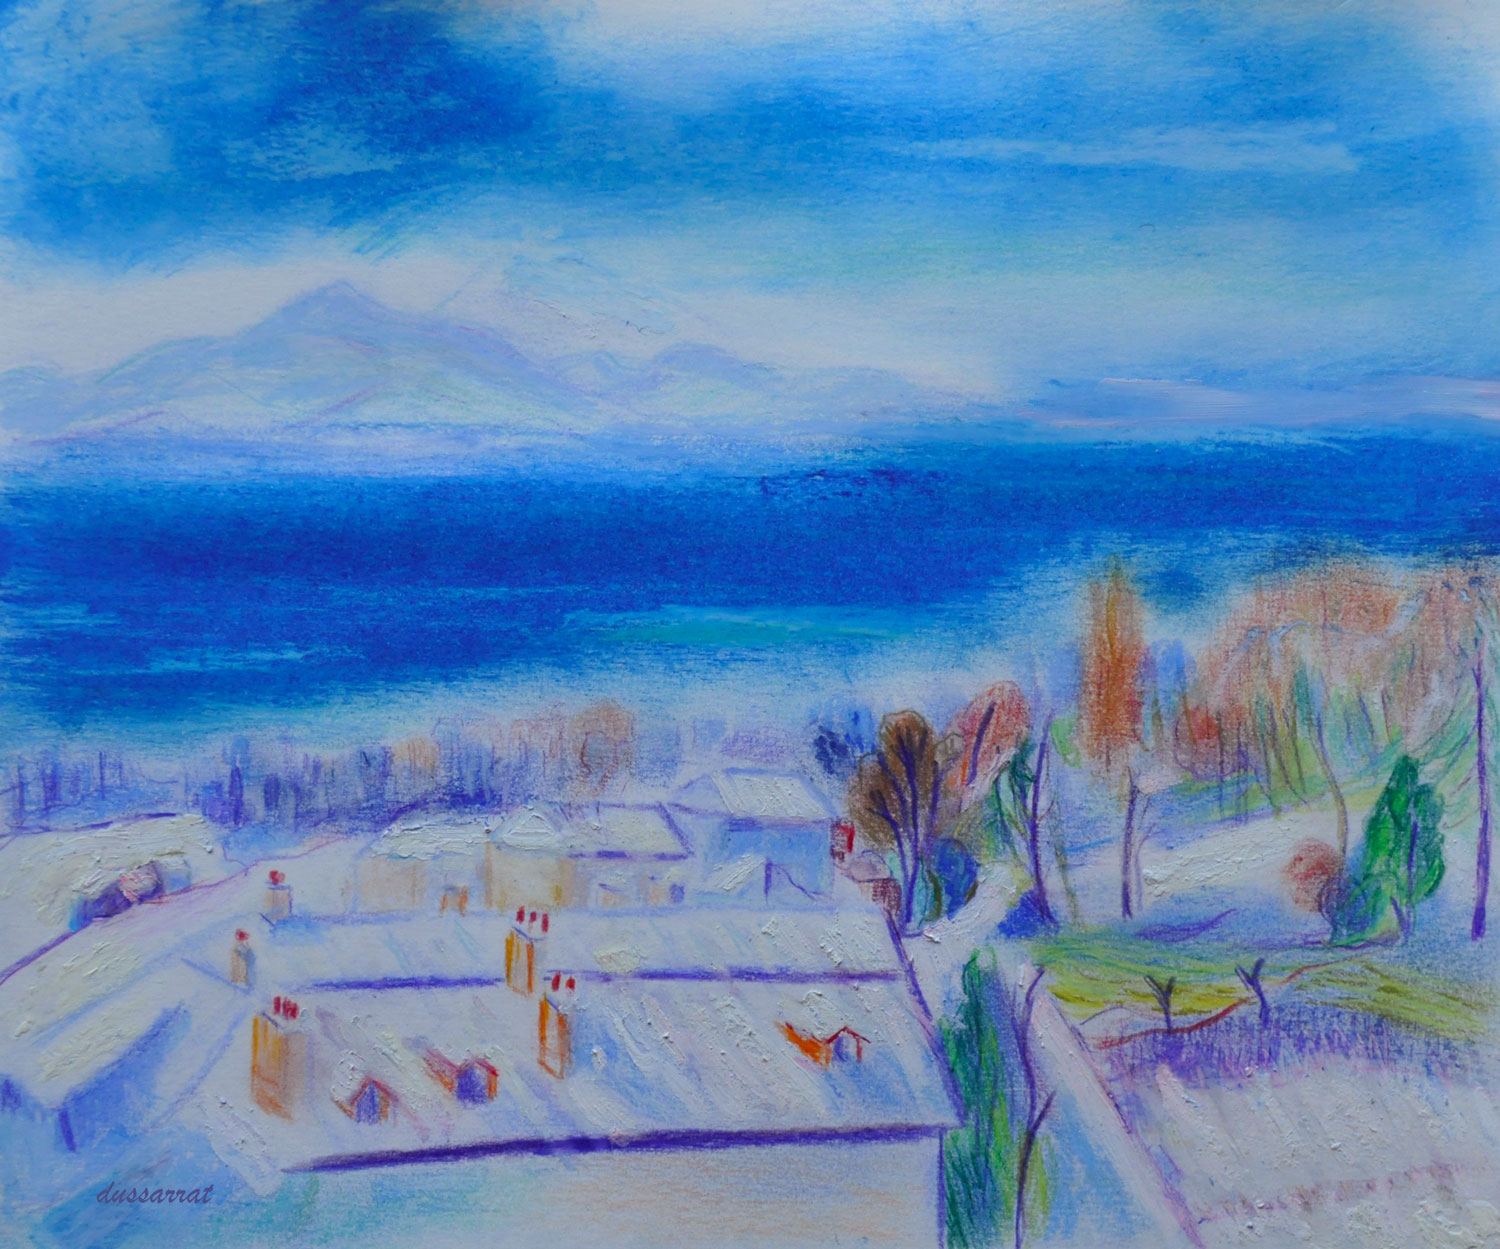 Lausanne sous la neige. Crayon de couleur, pastel et huile sur papier, 21x25, 2021. D'après Henri Manguin.